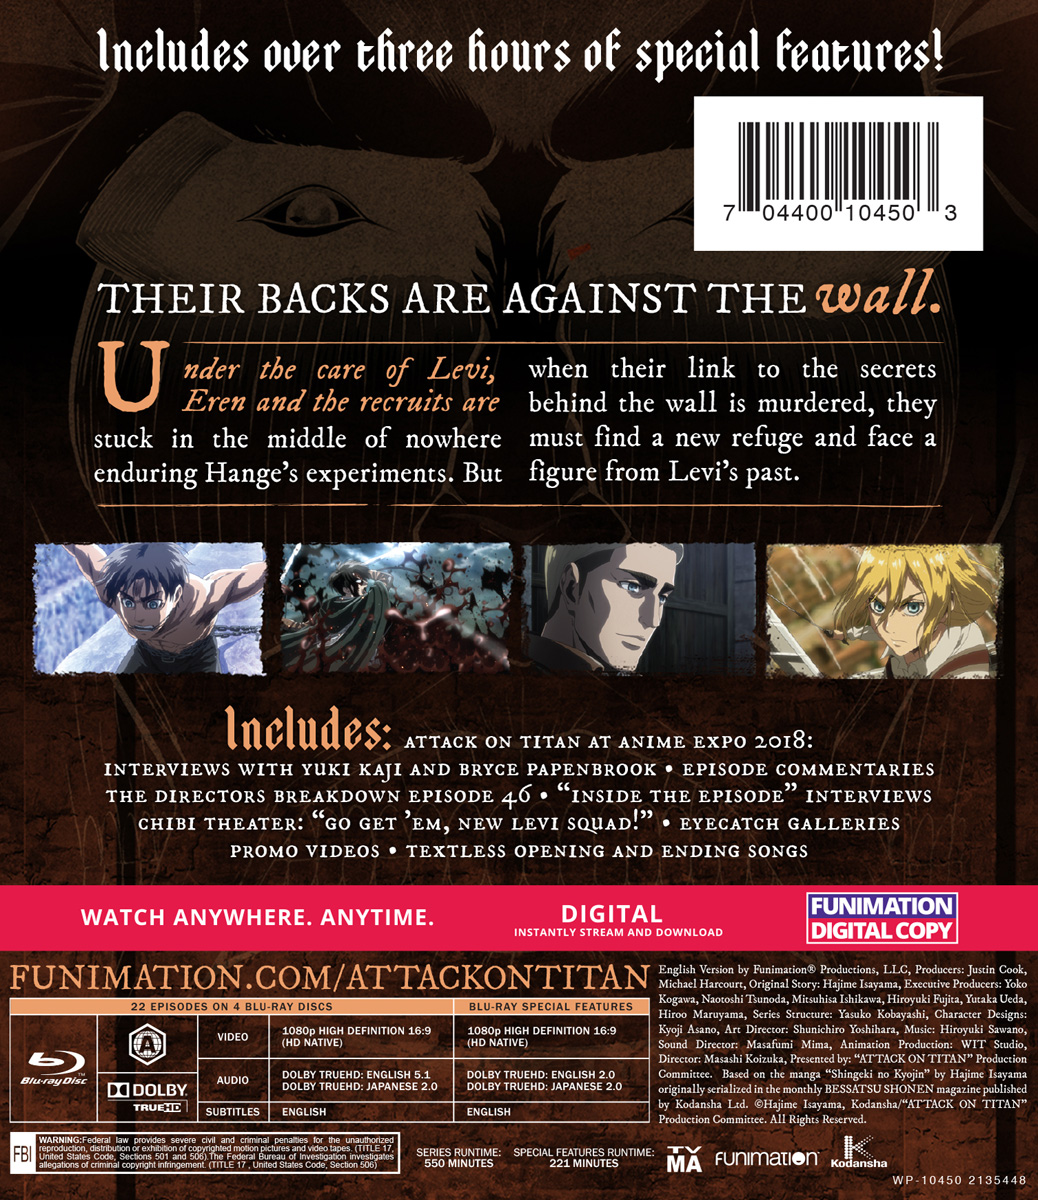 Attack on Titan - Season 1 - Blu-ray